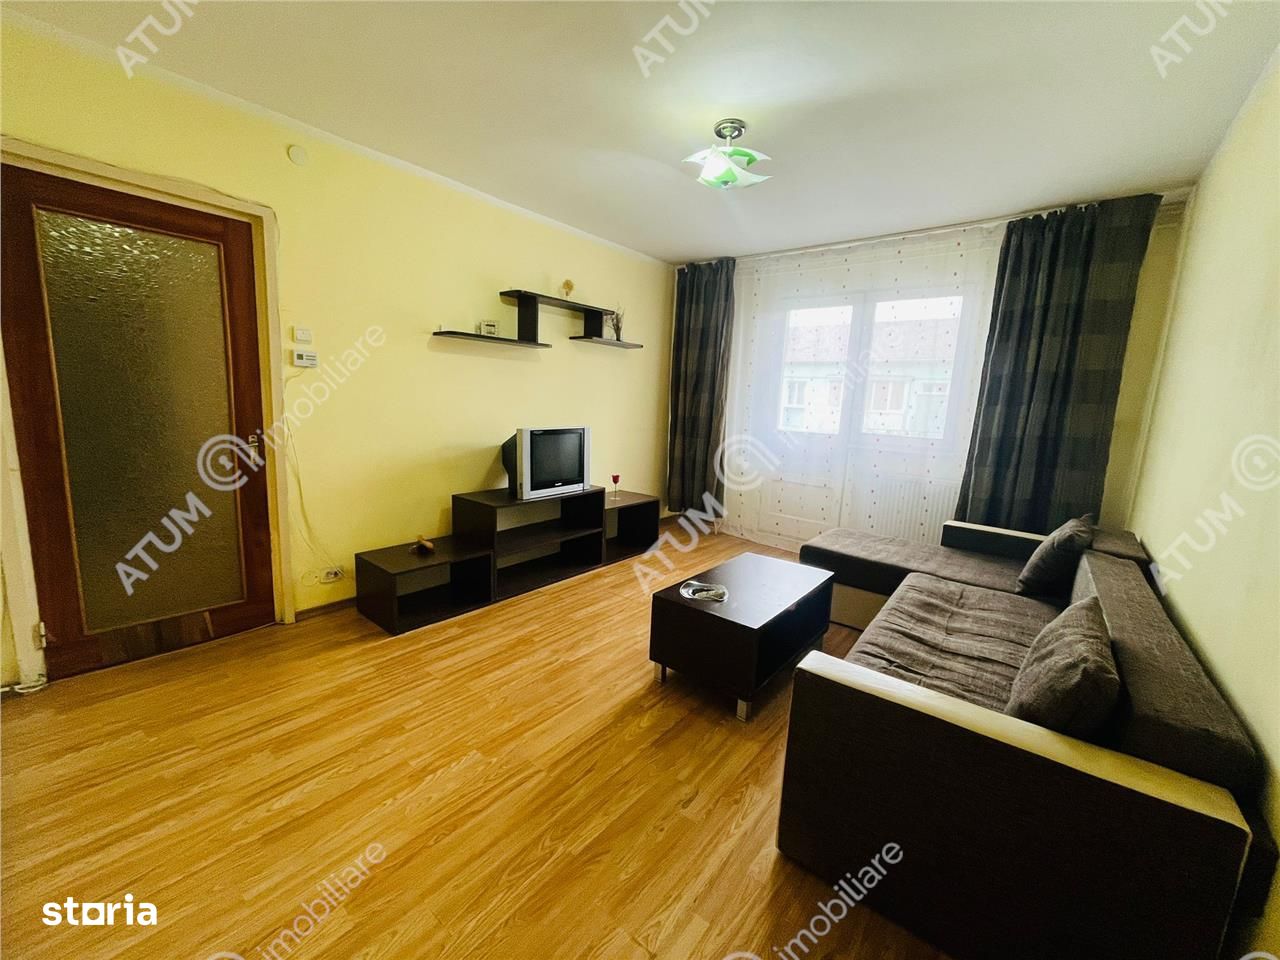 Apartament 3 camere pivnita situat in zona Cedonia din Sibiu